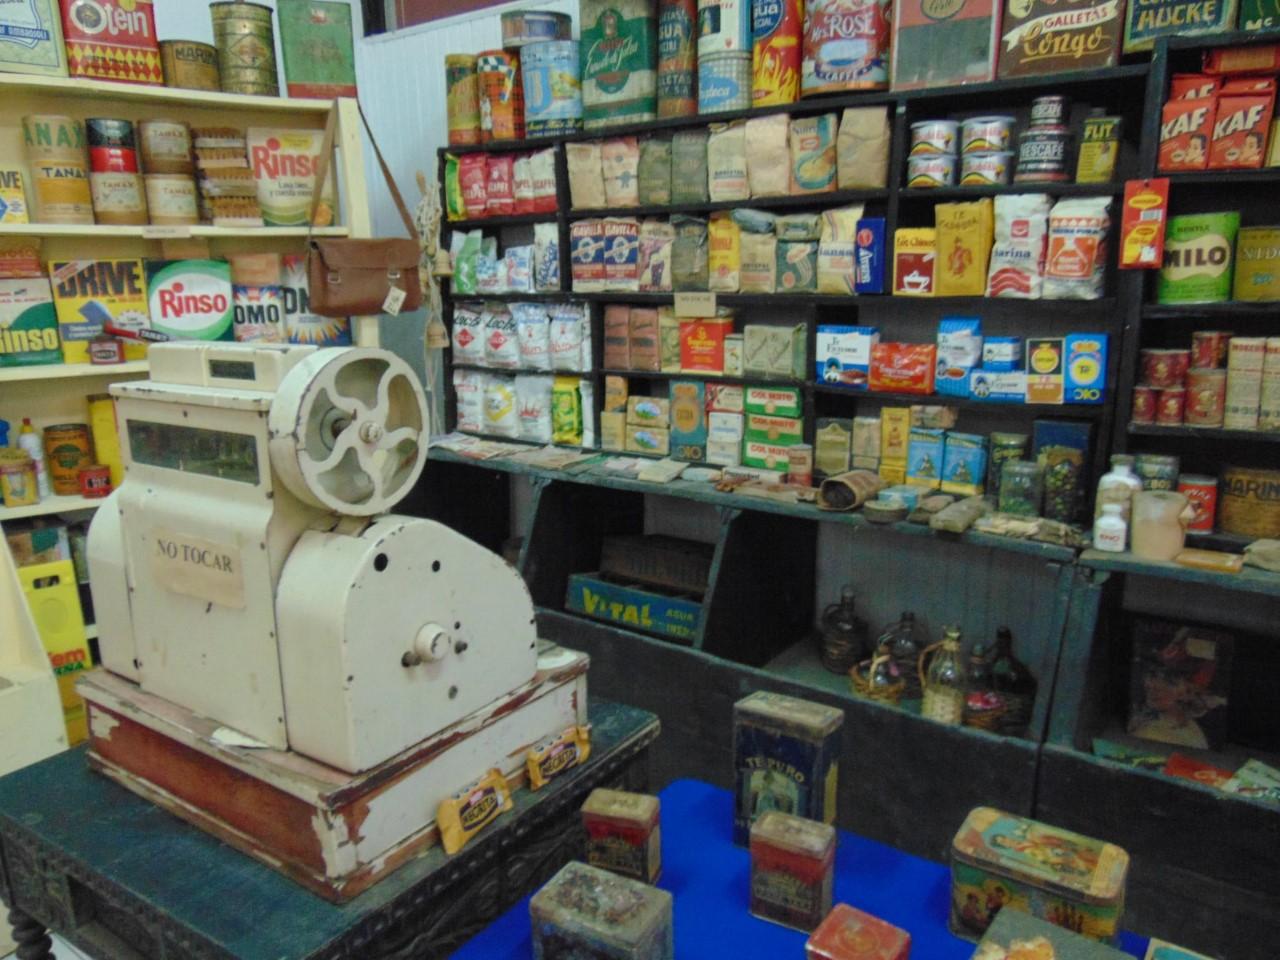 Fotografía de un almacén de barrio de los años 60', en la imagen se aprecia una antigua maquina registradora y góndolas con productos embasados.